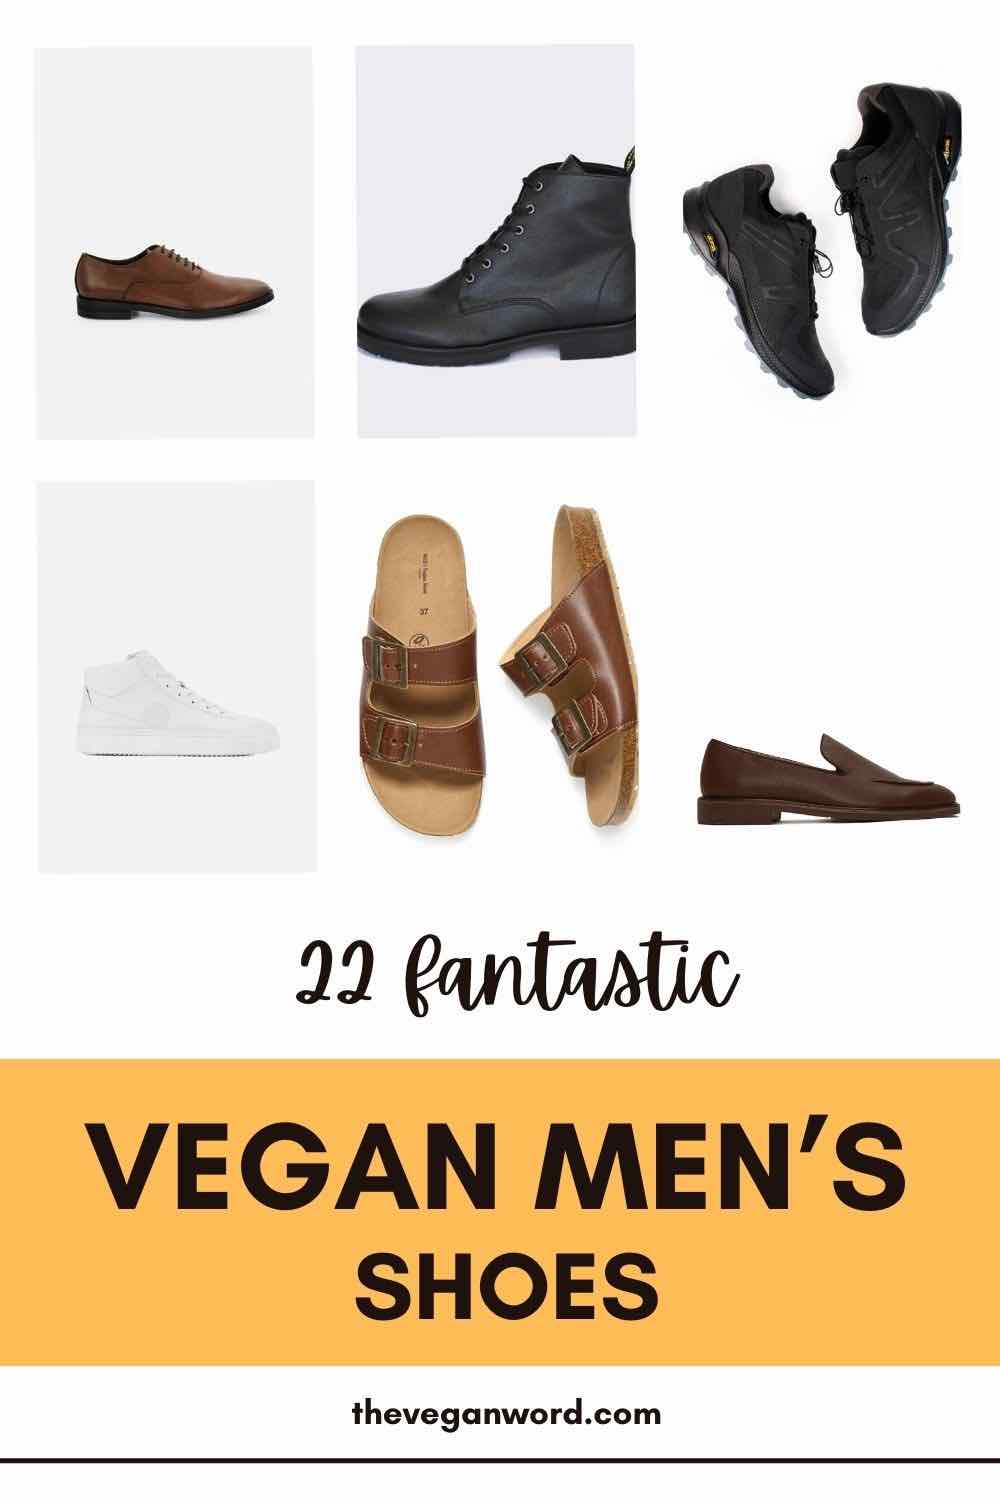 Pinterest image showing vegan men's shoes and text that reads "22 fantastic vegan men's shoes"